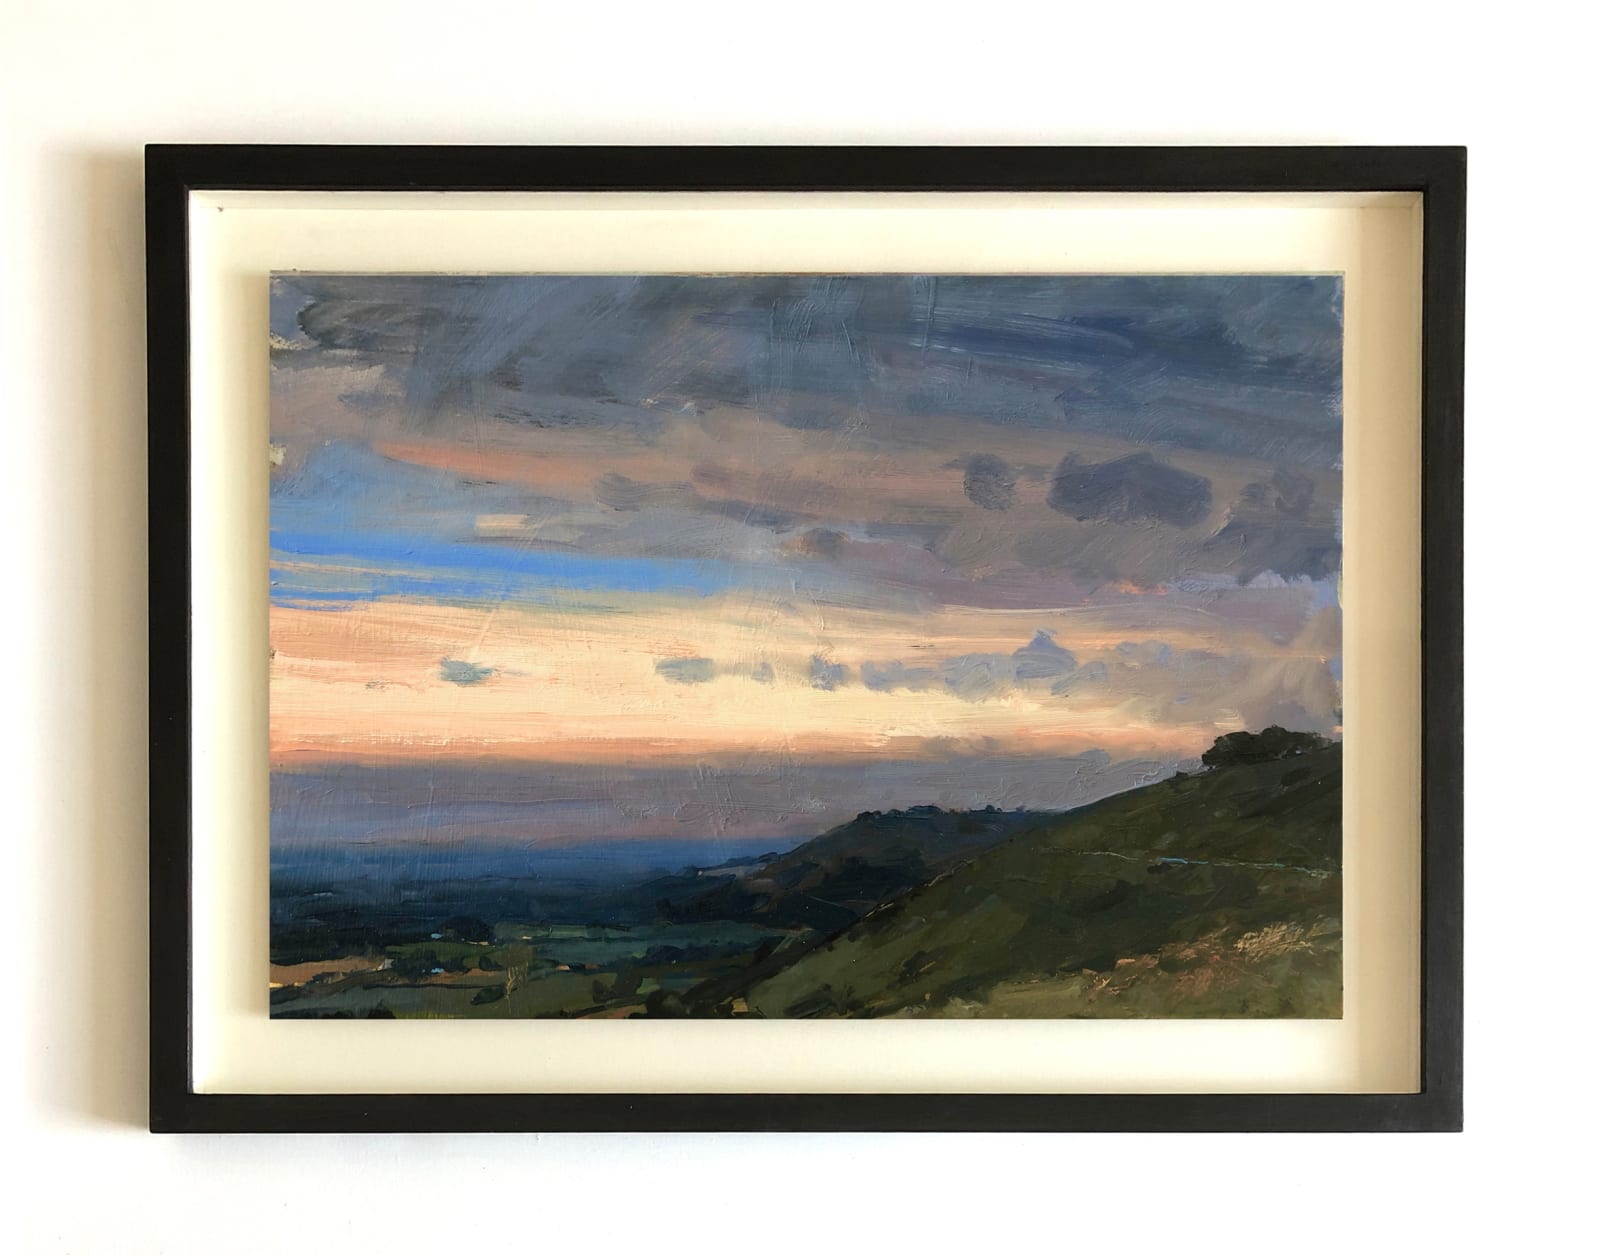 Wood on a hill, dusk, South Downs. Framed, 2021